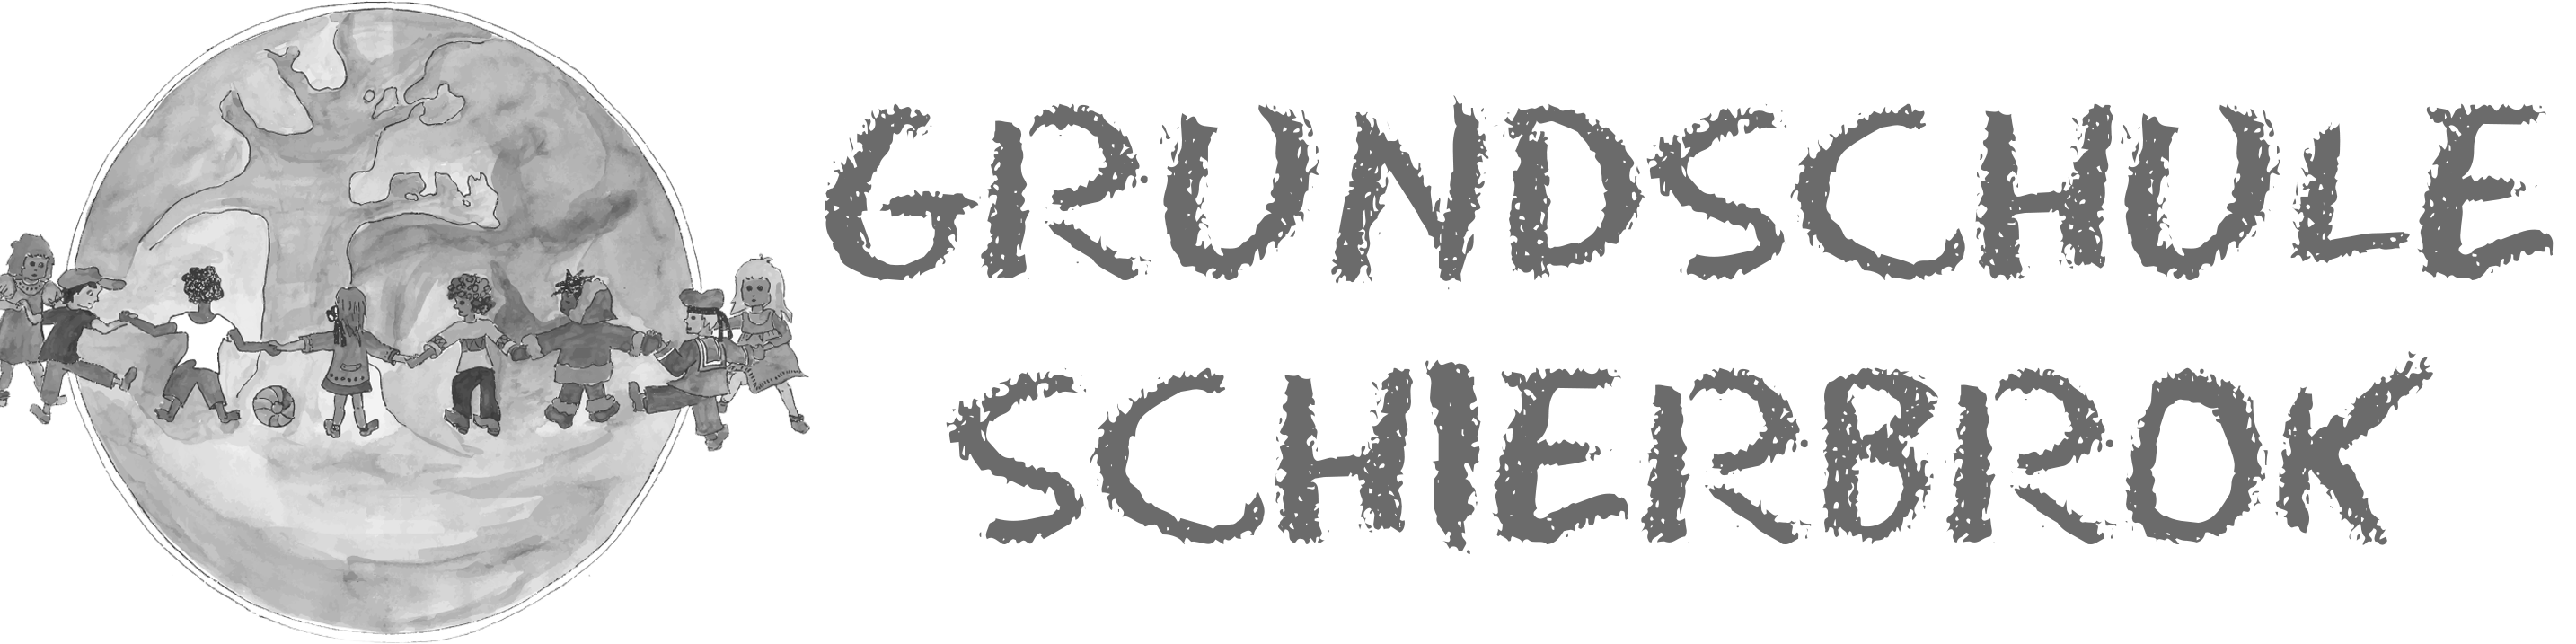 Grundschule Schierbrok logo